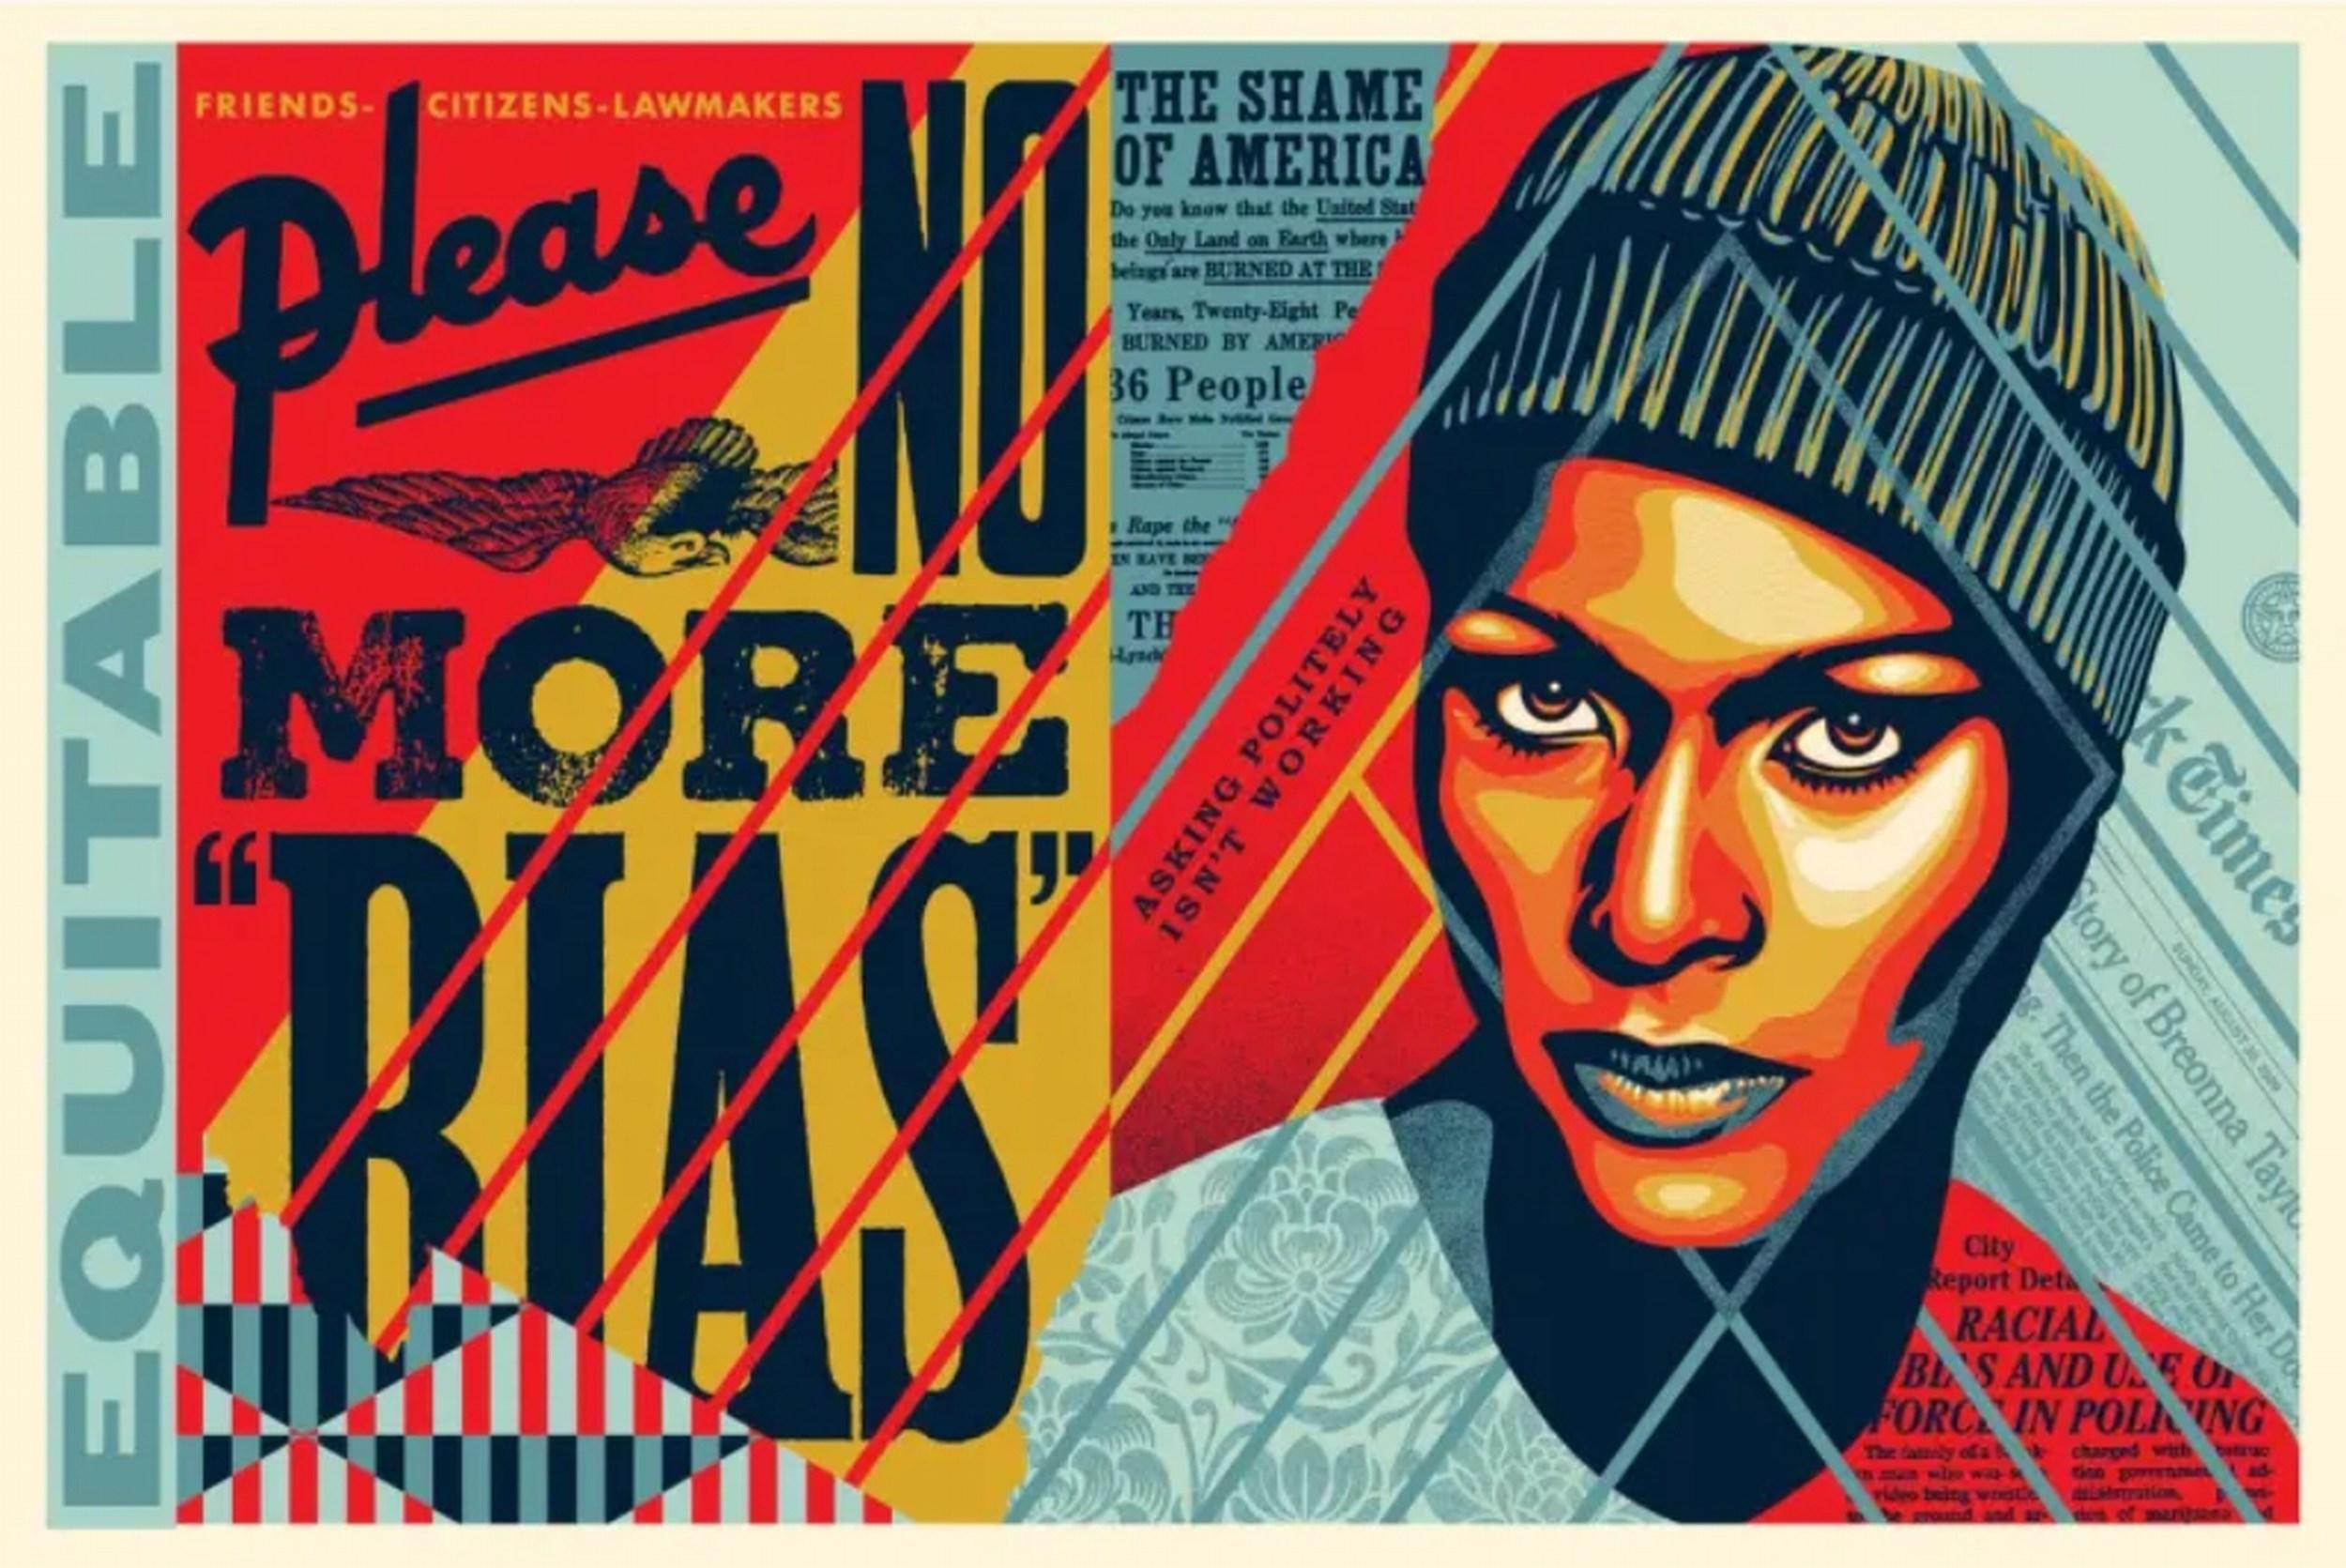 Shepard Fairey Portrait Print – No More Bias (Tyre Nichols, Memphis, schreien, Rassentrennung, Polizei brutalität)